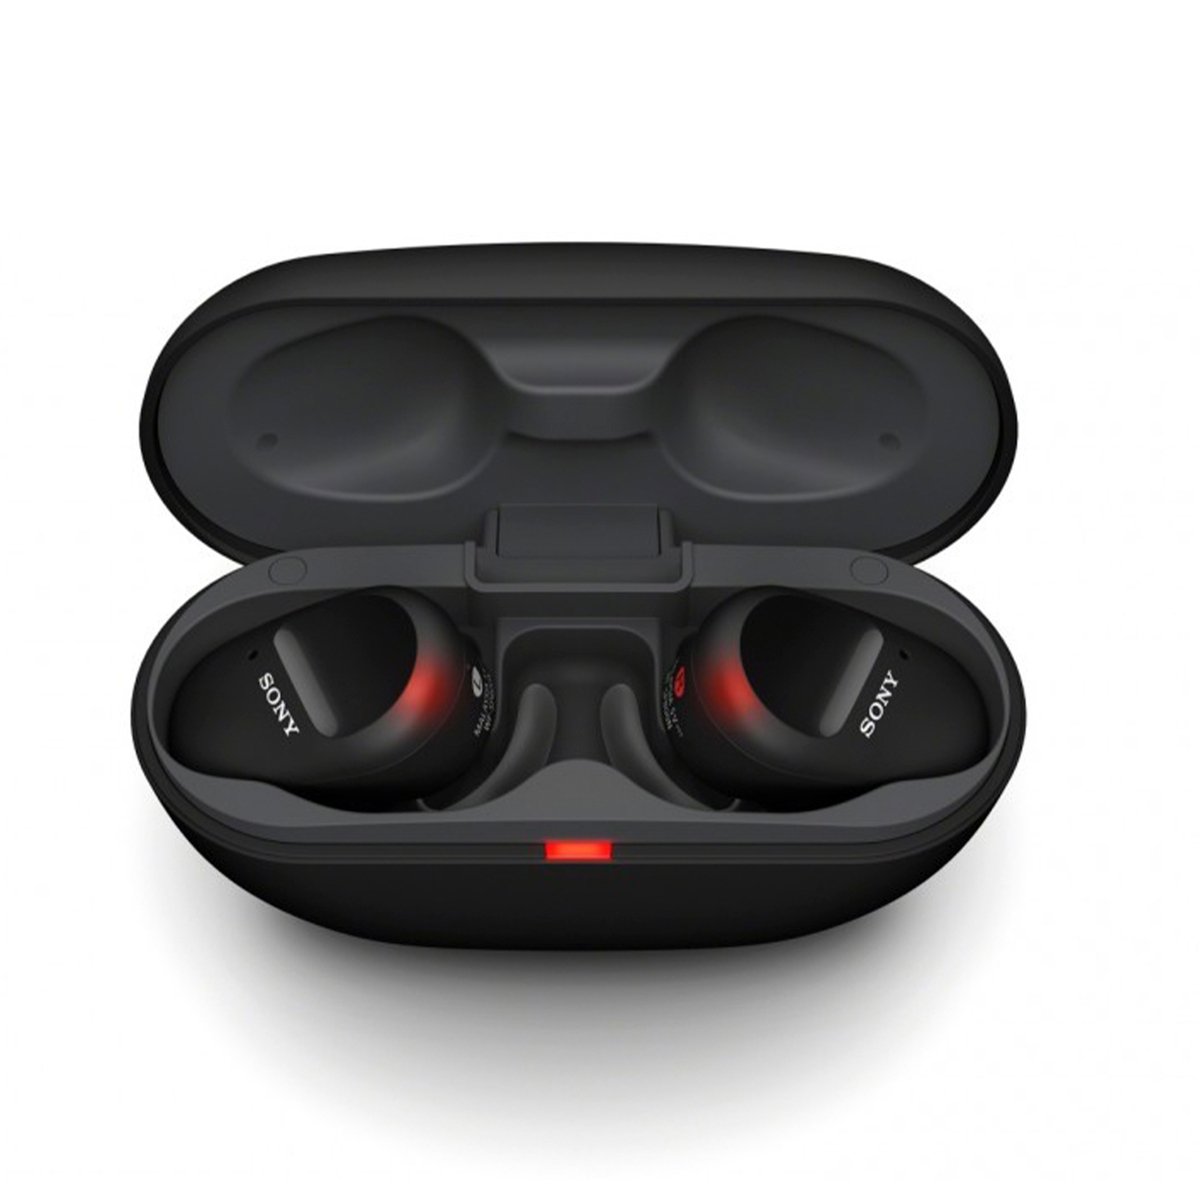 Sony WF-SP800N Truly Wireless Sports In-Ear Headphones Black